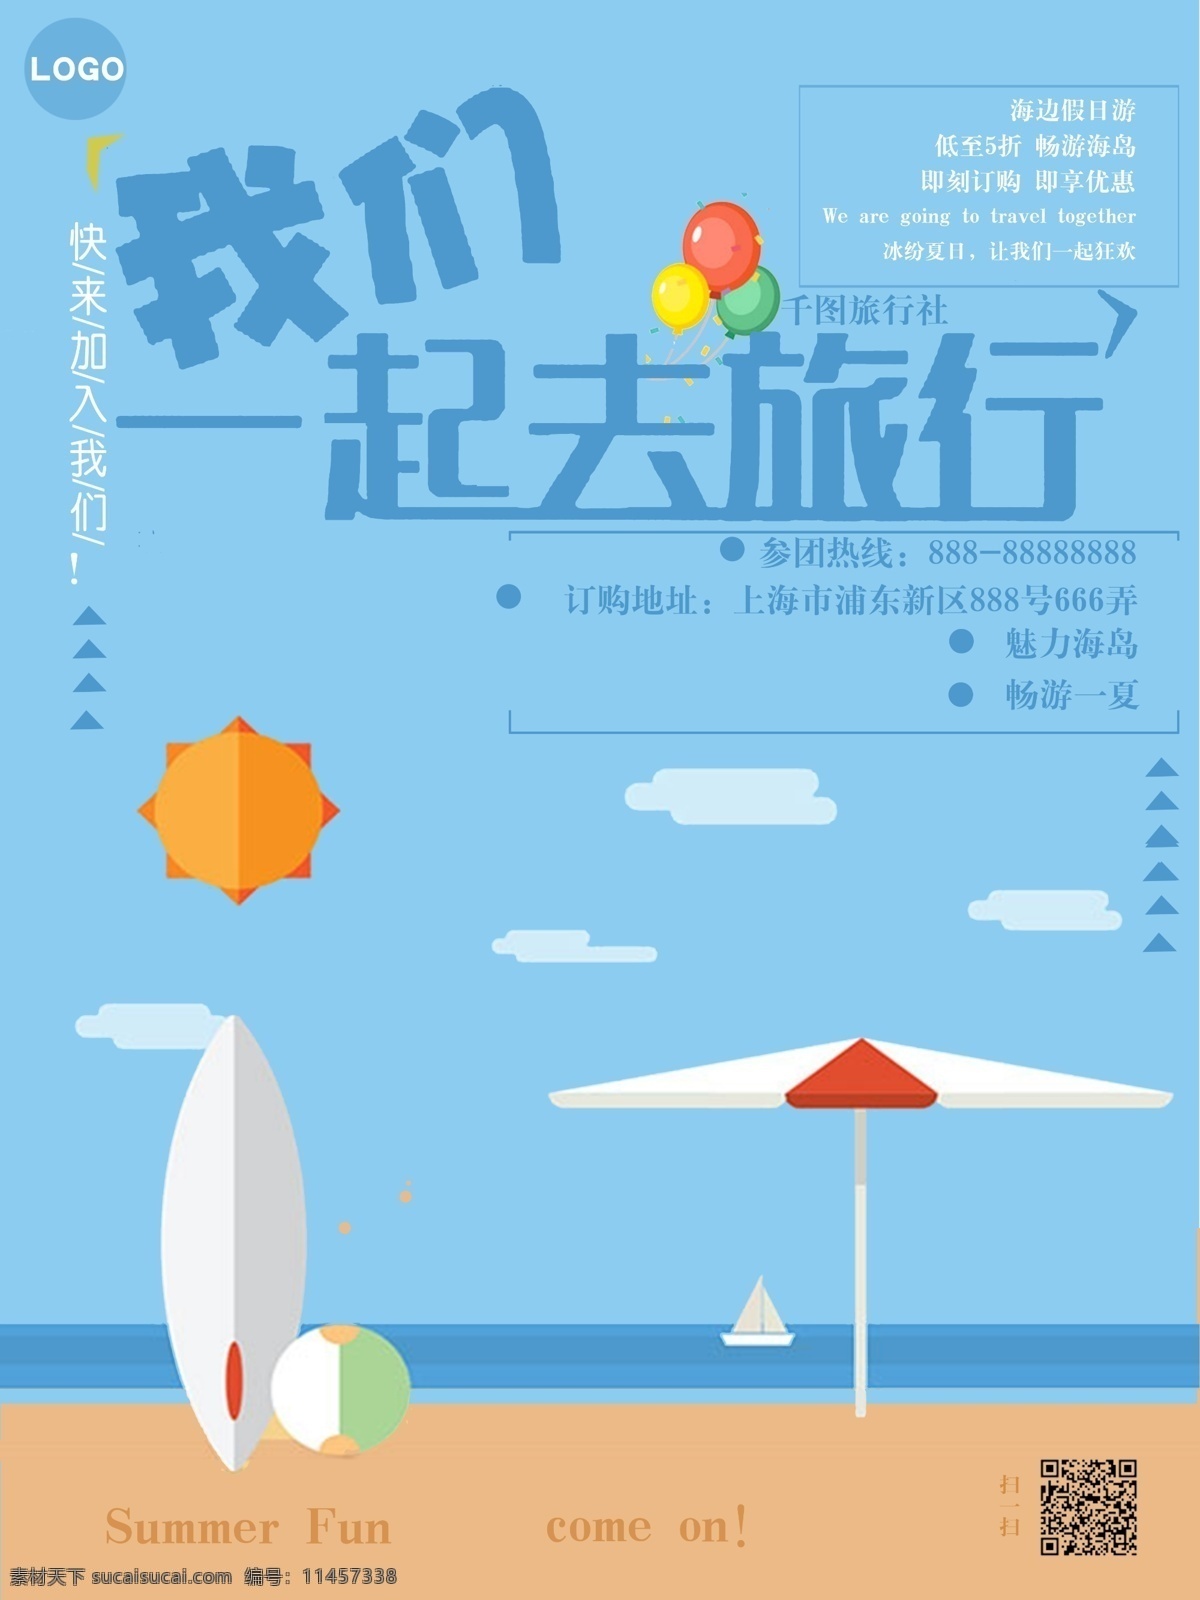 蓝色 插画 暑假 假日旅游 海报 暑假旅游 旅游海报 海边游 旅行社 海边